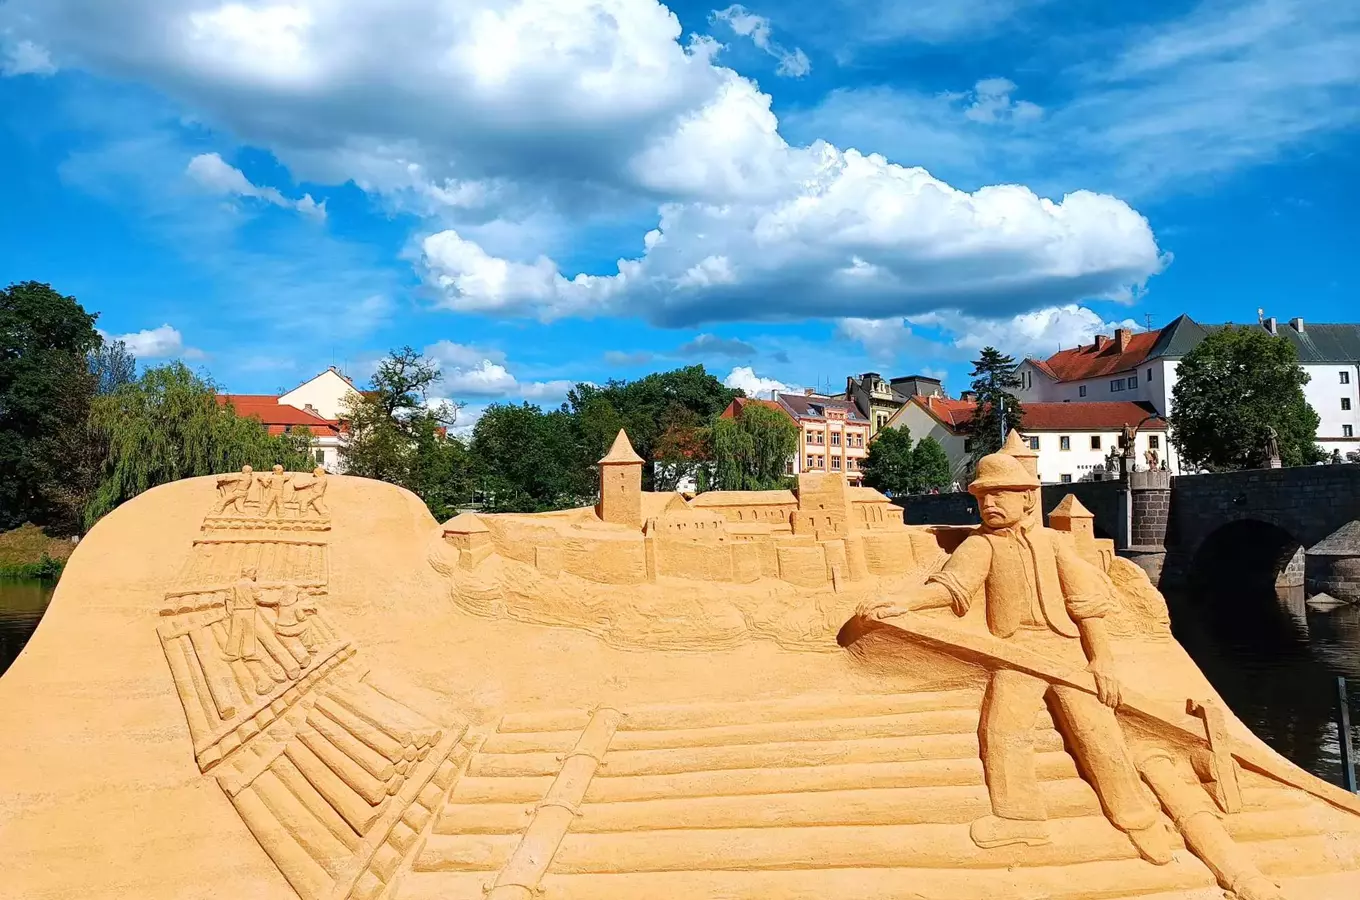 V Písku si prohlédnete písečné sochy – galerie pod širým nebem se nachází u Kamenného mostu